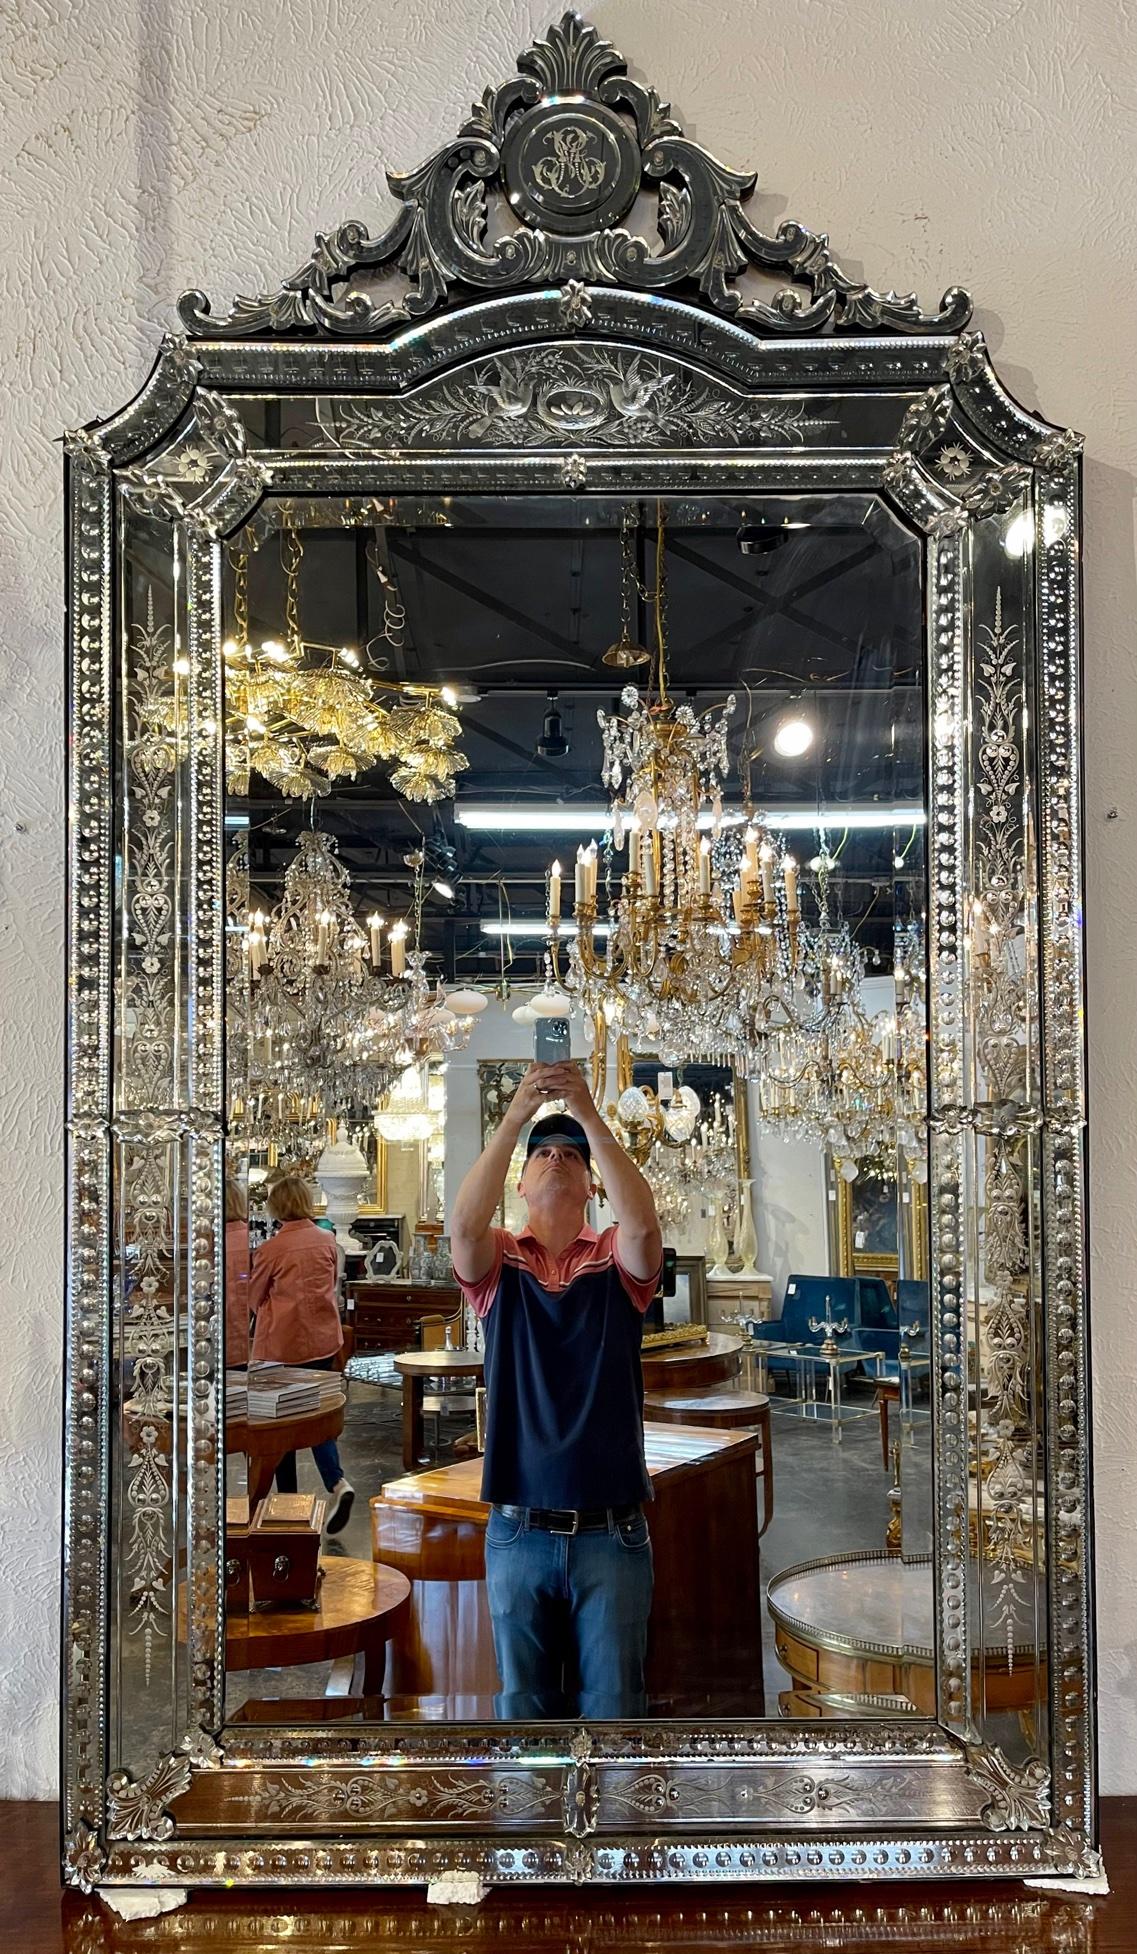 Magnifique miroir vénitien italien de la fin du 19e siècle. Circa 1880. Une belle addition à toute maison !